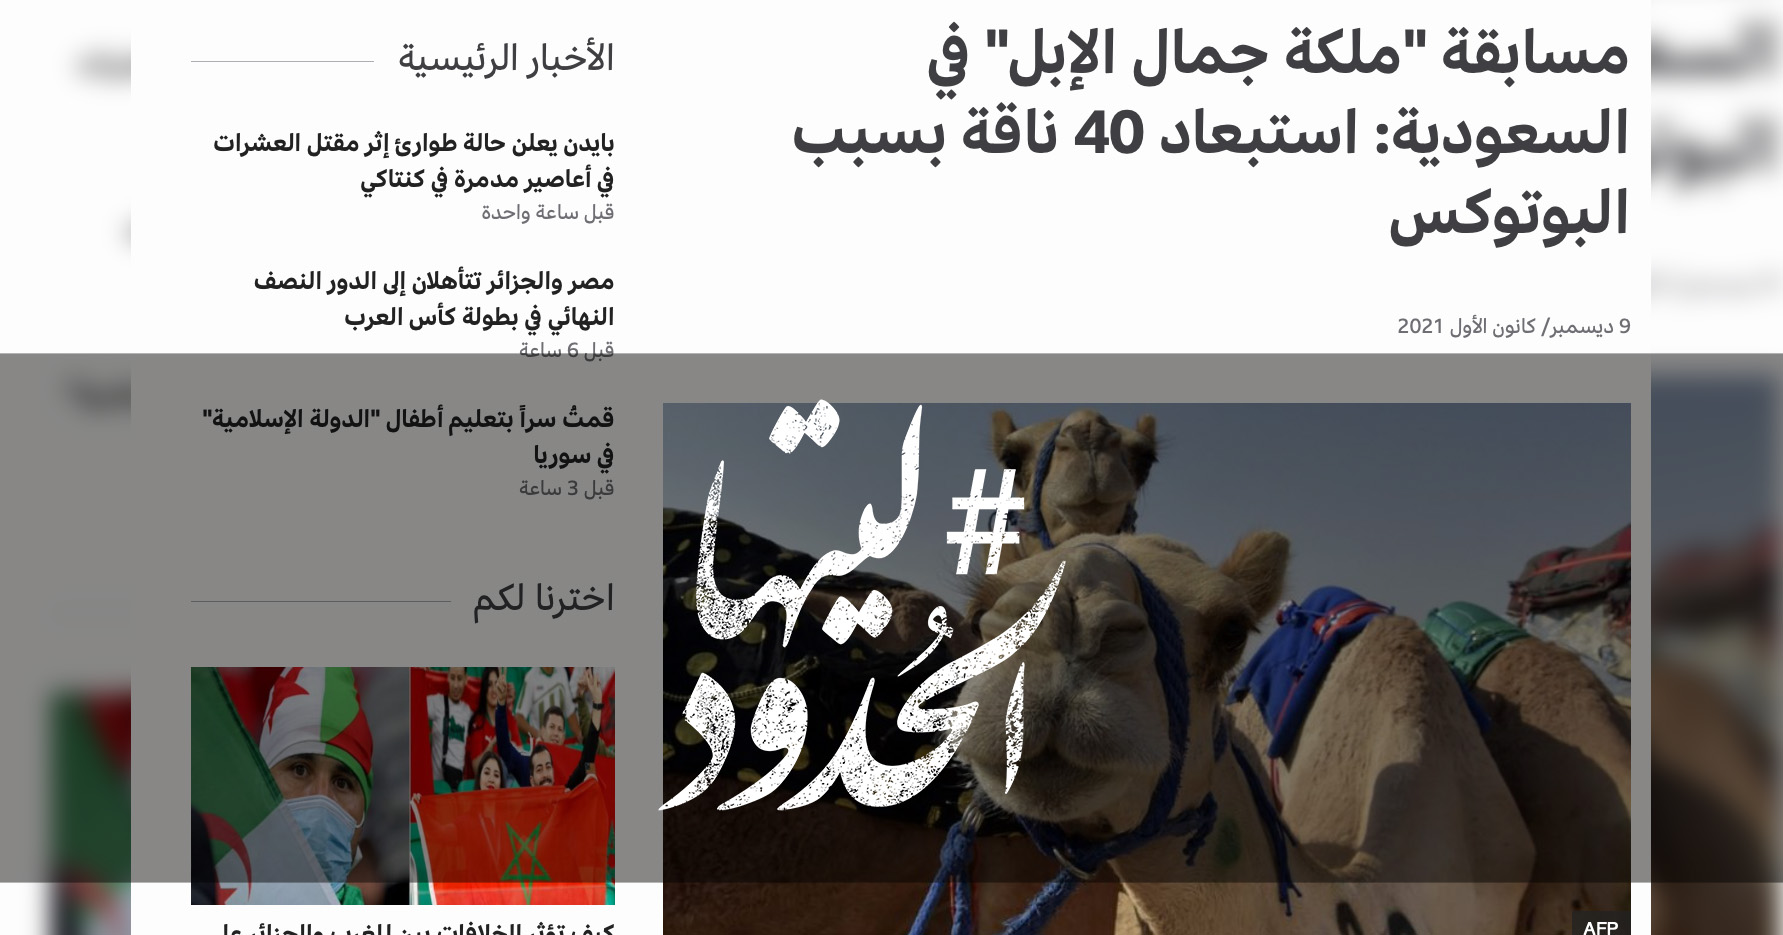 صورة مسابقة "ملكة جمال الإبل" في السعودية: استبعاد 40 ناقة بسبب البوتوكس